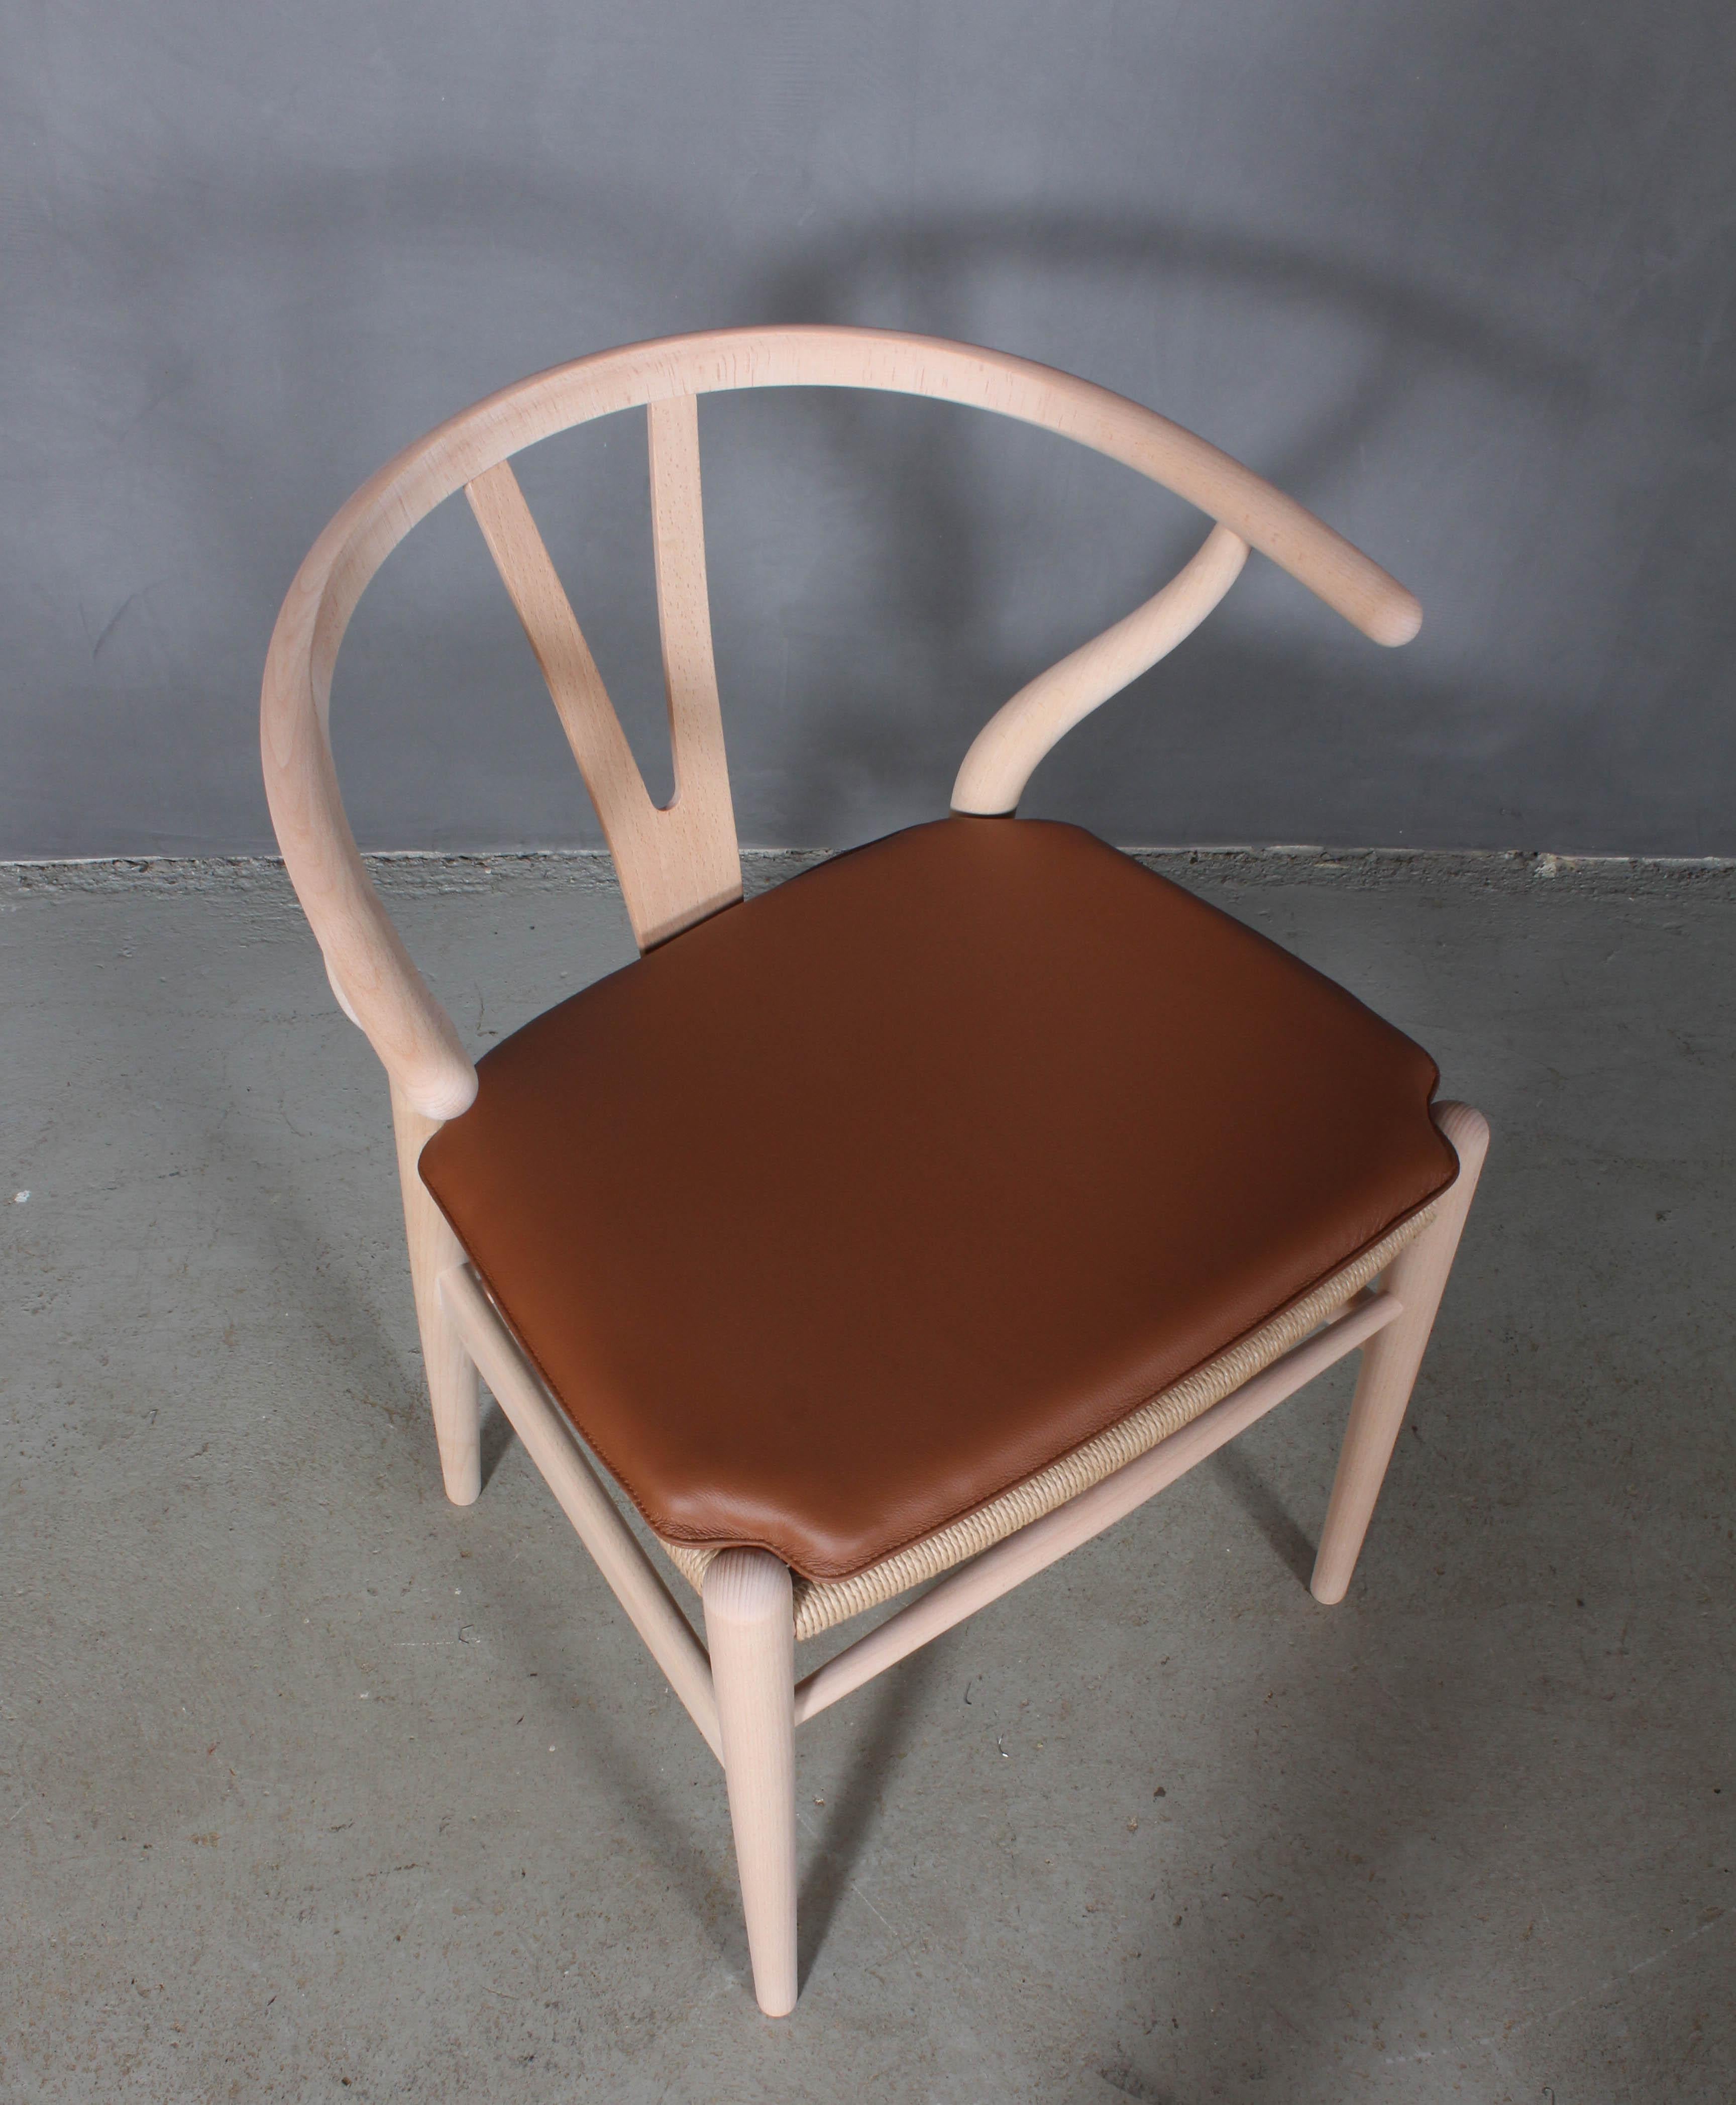 Coussins Hans J. Wegner pour la chaise wishbone modèle CH24.

Fabriqué en cuir noir et en mousse de bonne qualité.

Seulement le coussin, pas la chaise.